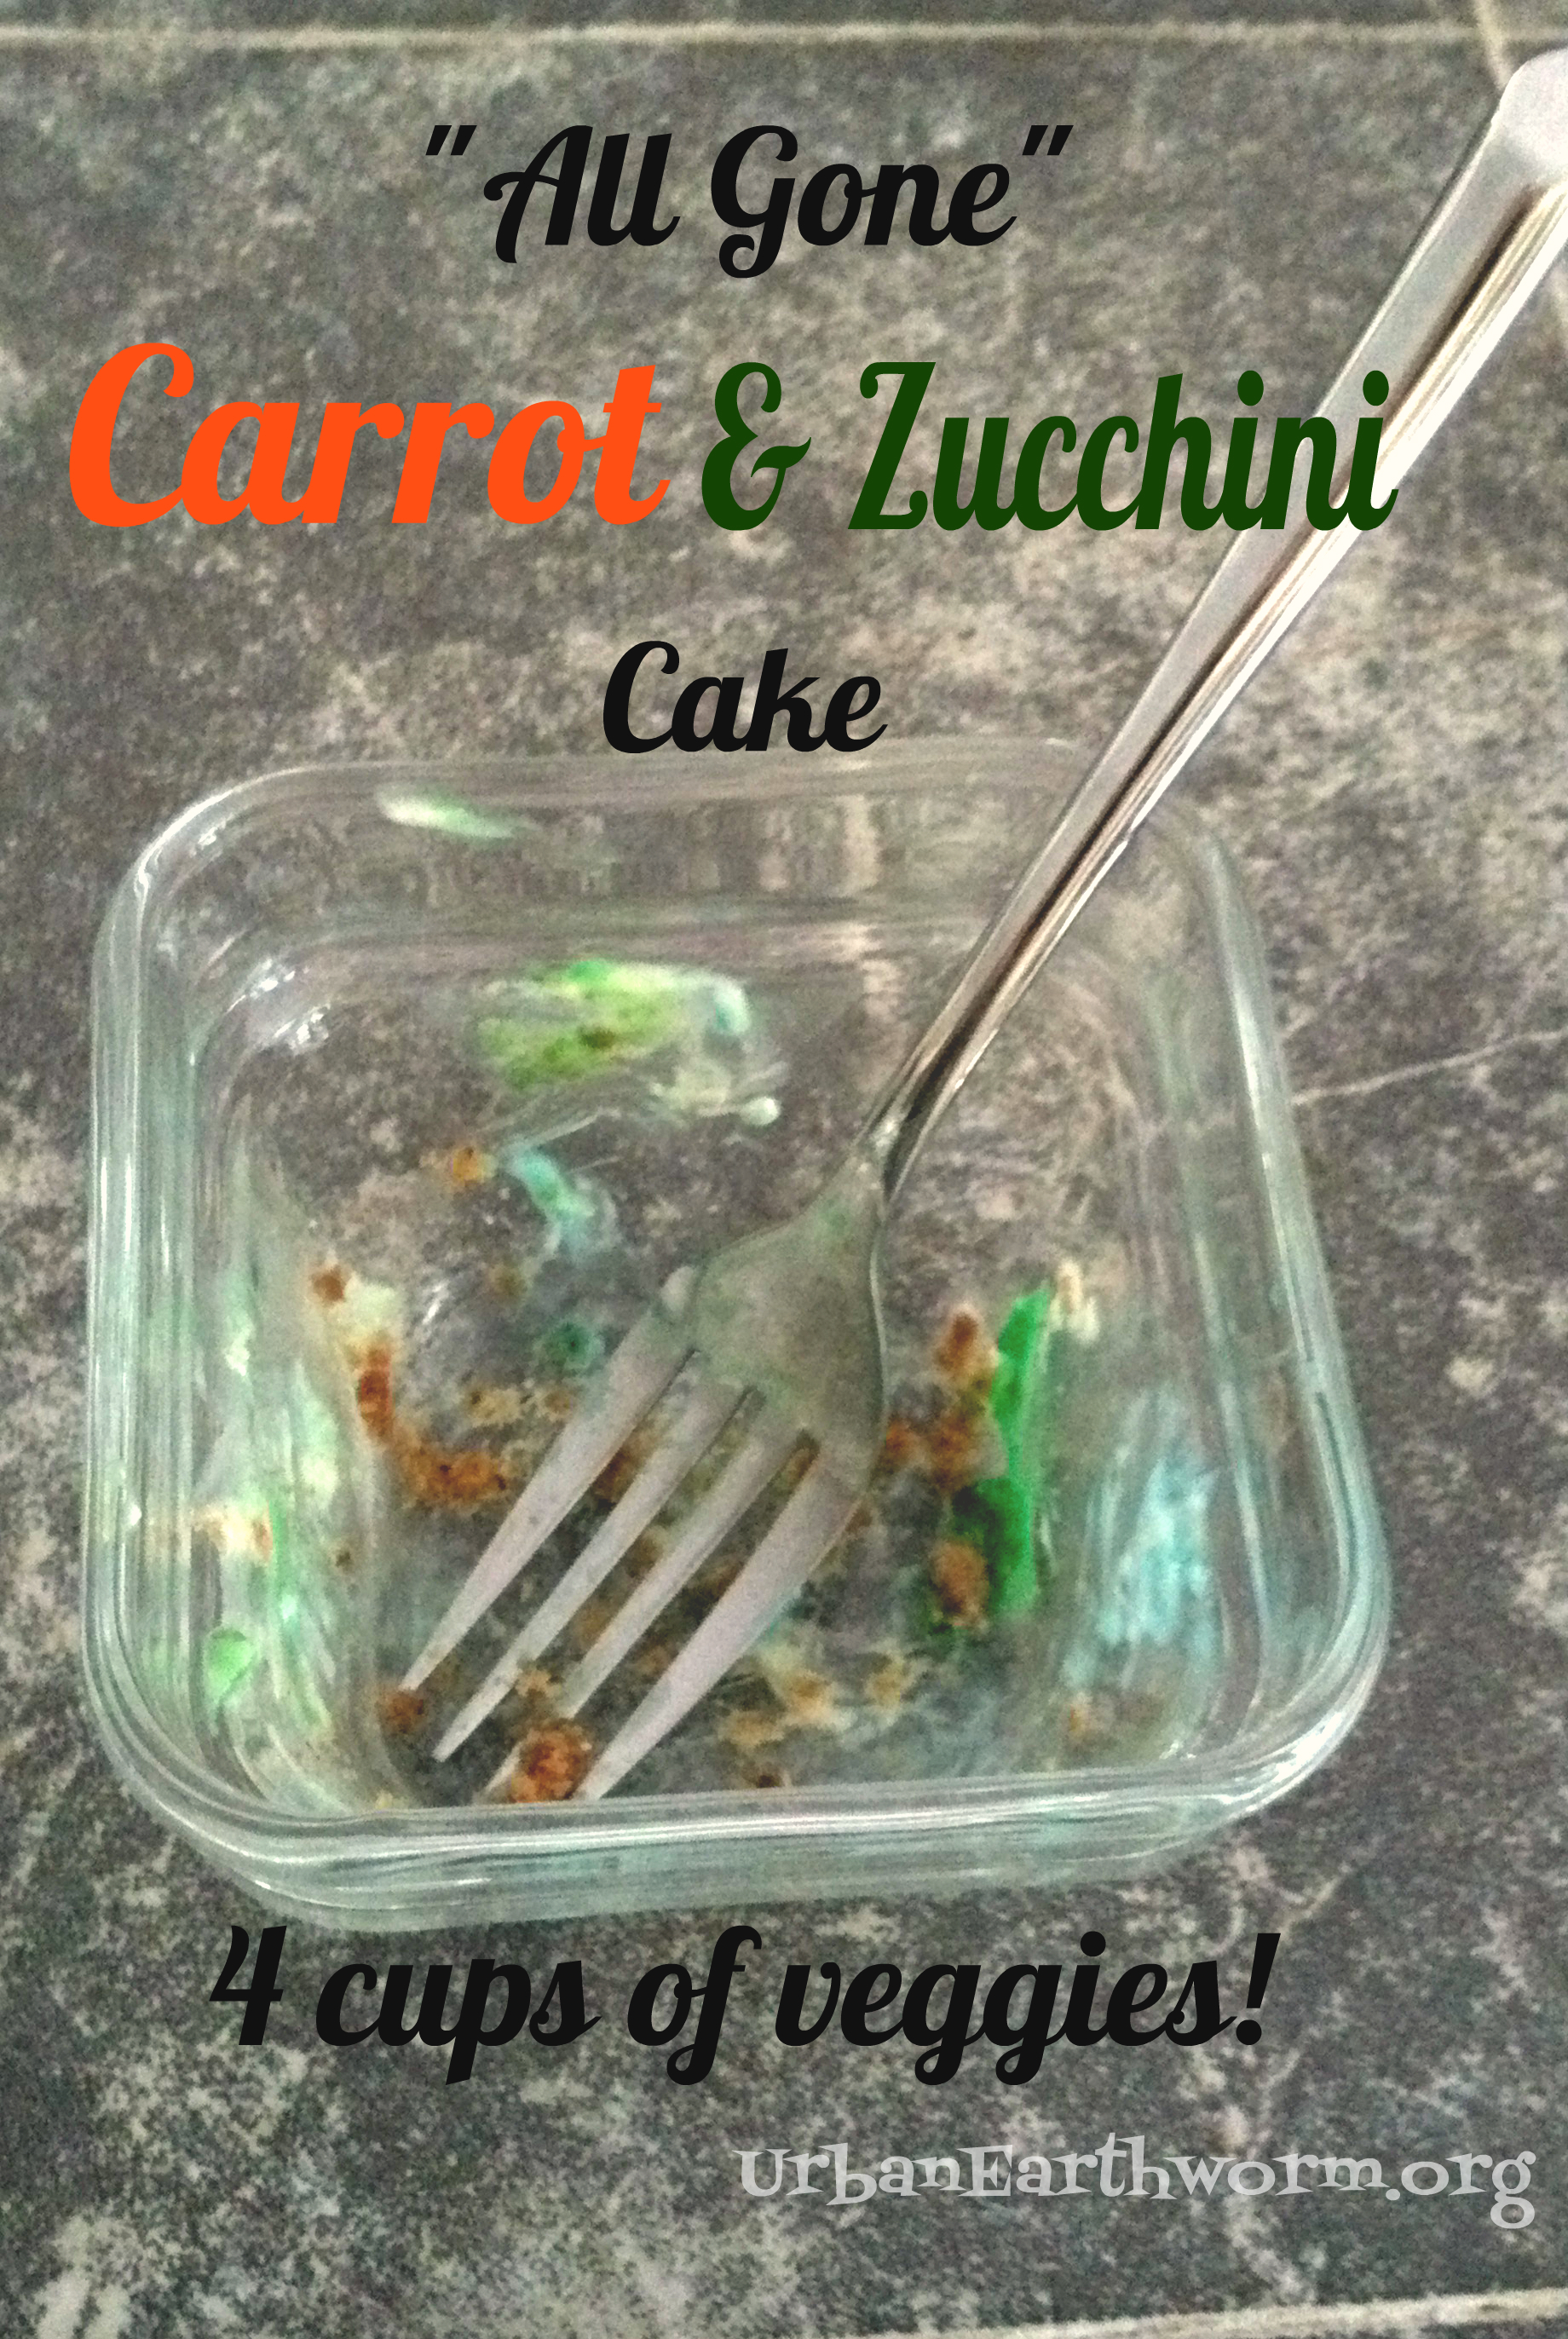 Vegan Carrot and Zucchini Cake recipe with vegan cream cheese icing